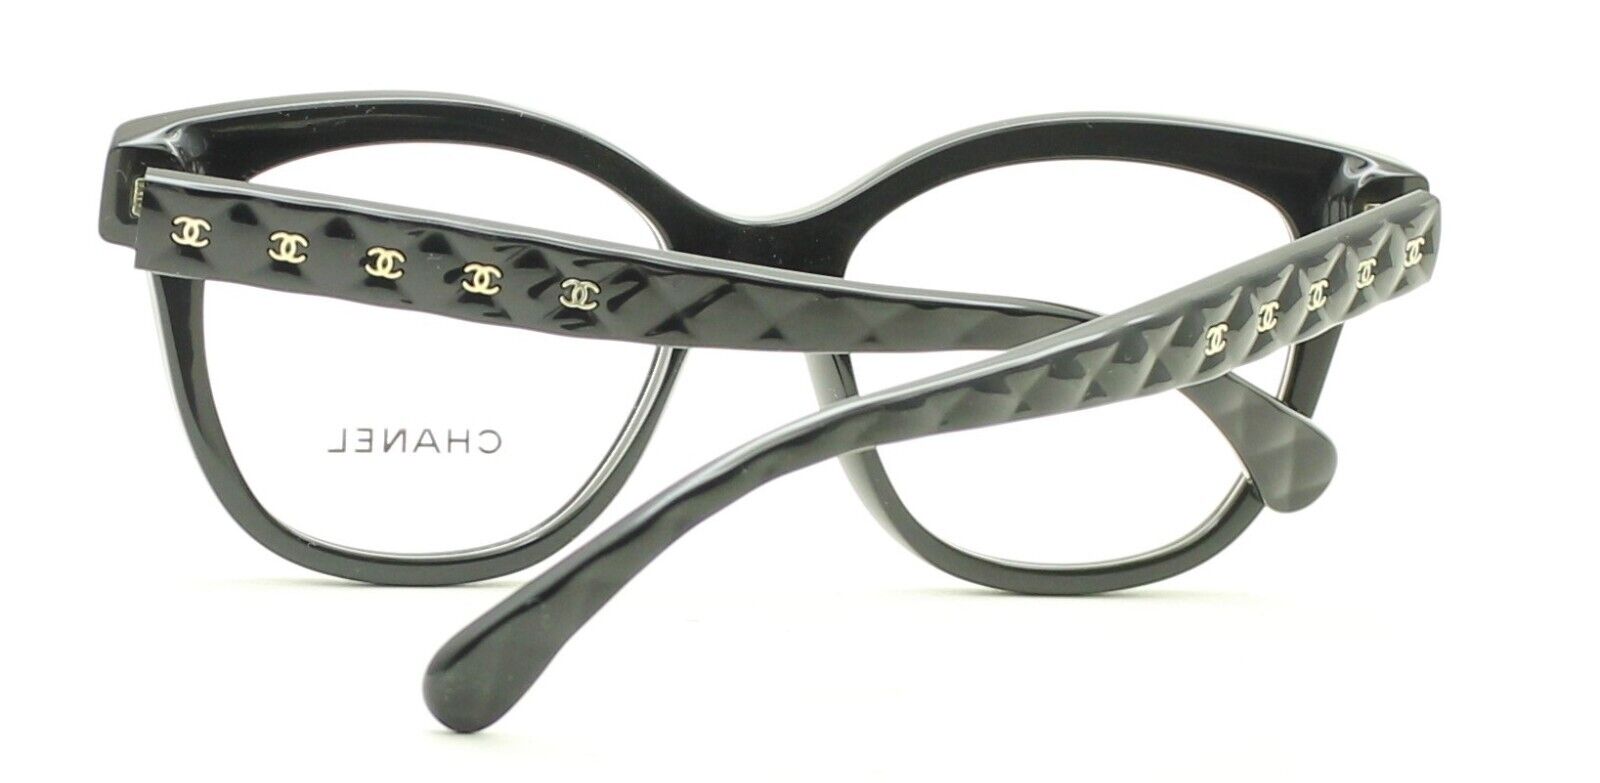 CHANEL 3442 622 51mm Eyewear FRAMES Eyeglasses RX